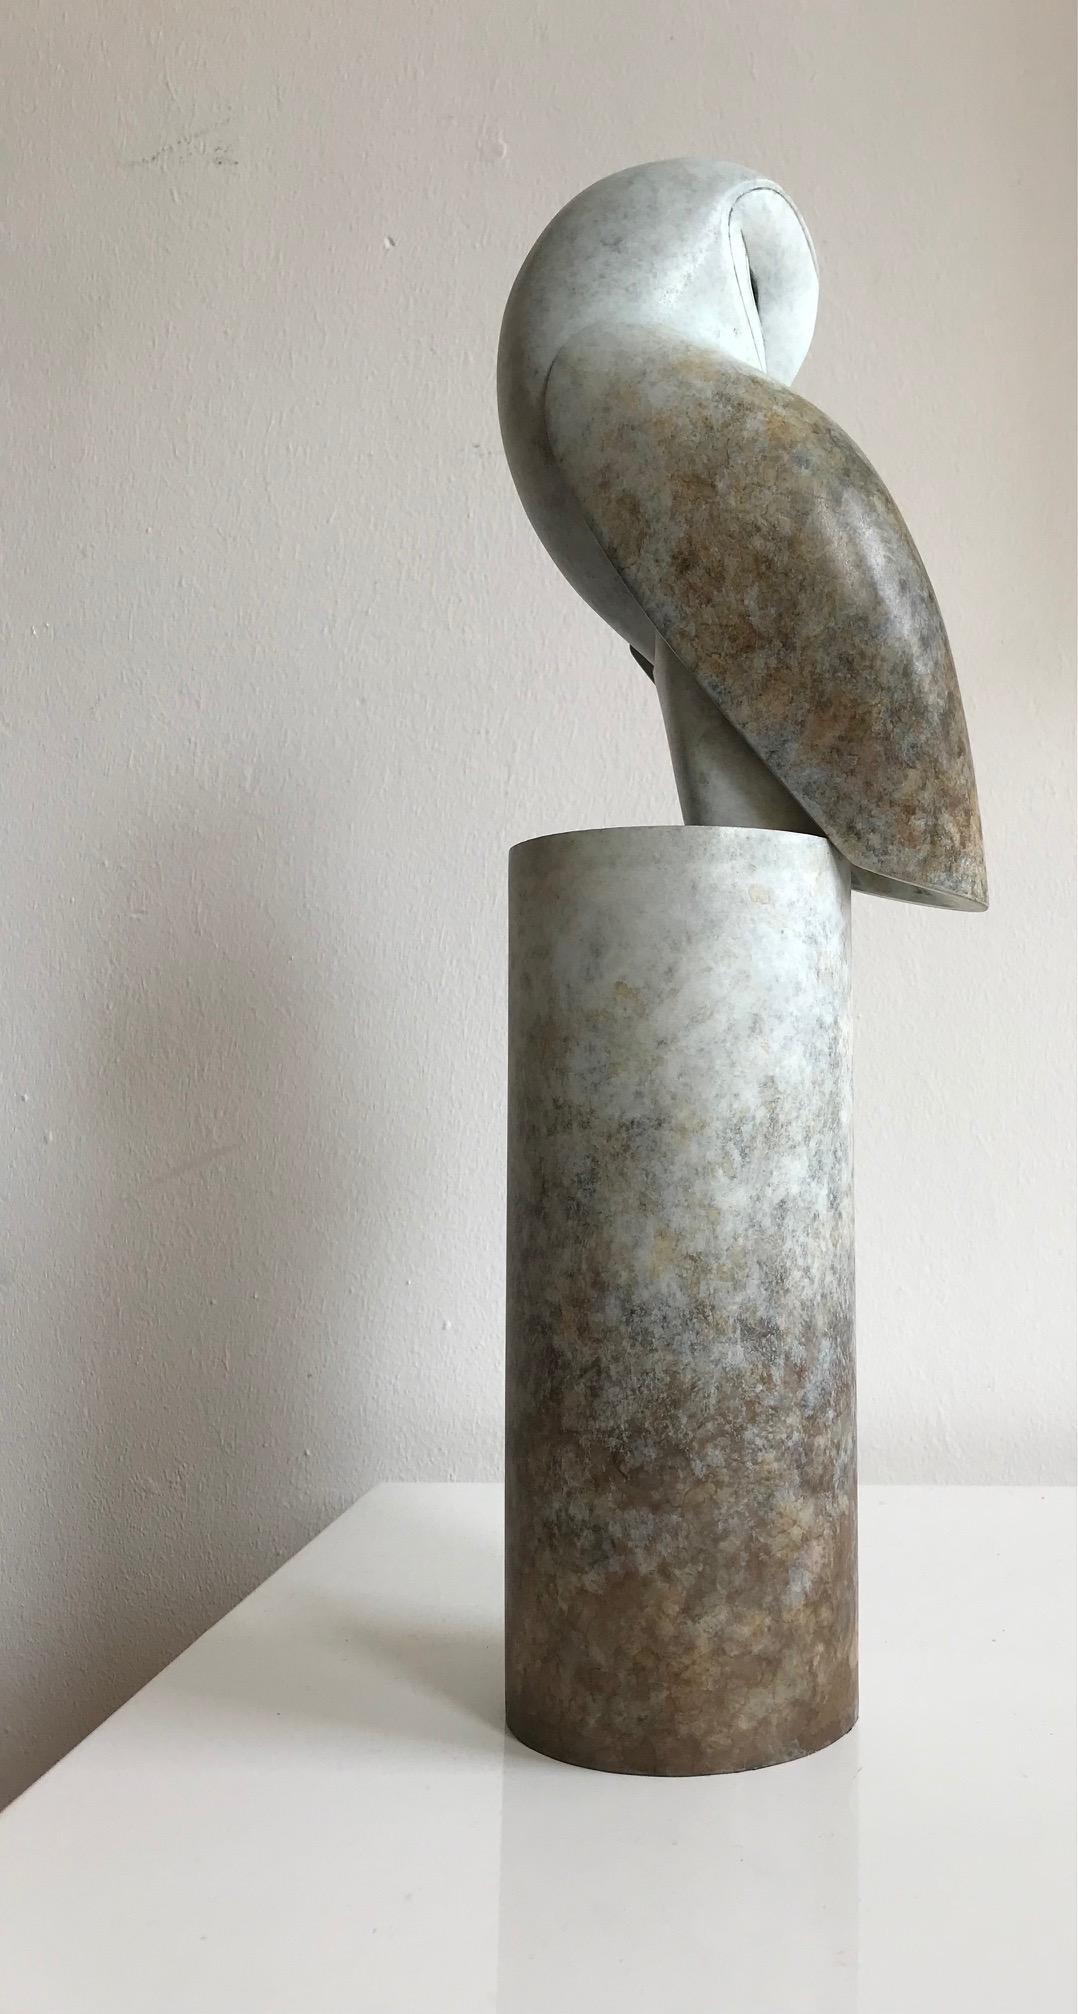 Portrait contemporain en bronze d'un hibou, chouette de grange, sculpture « Turnaround » - Contemporain Sculpture par Anthony Theakston